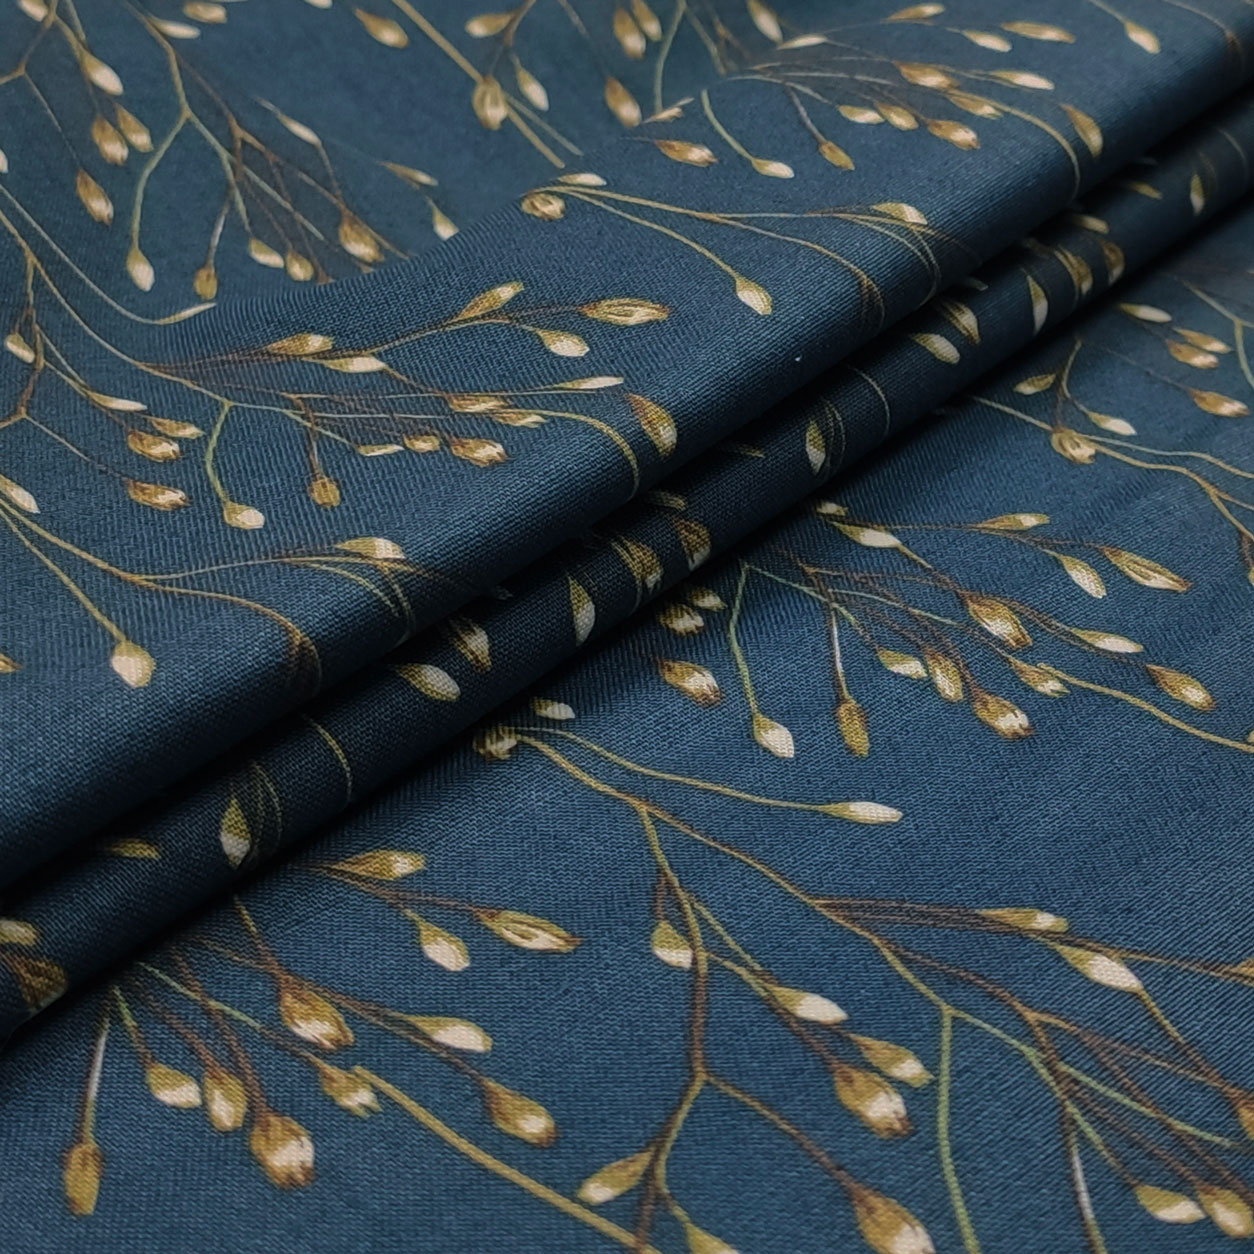 Tessuto in cotone arredo ramoscelli blu scuro